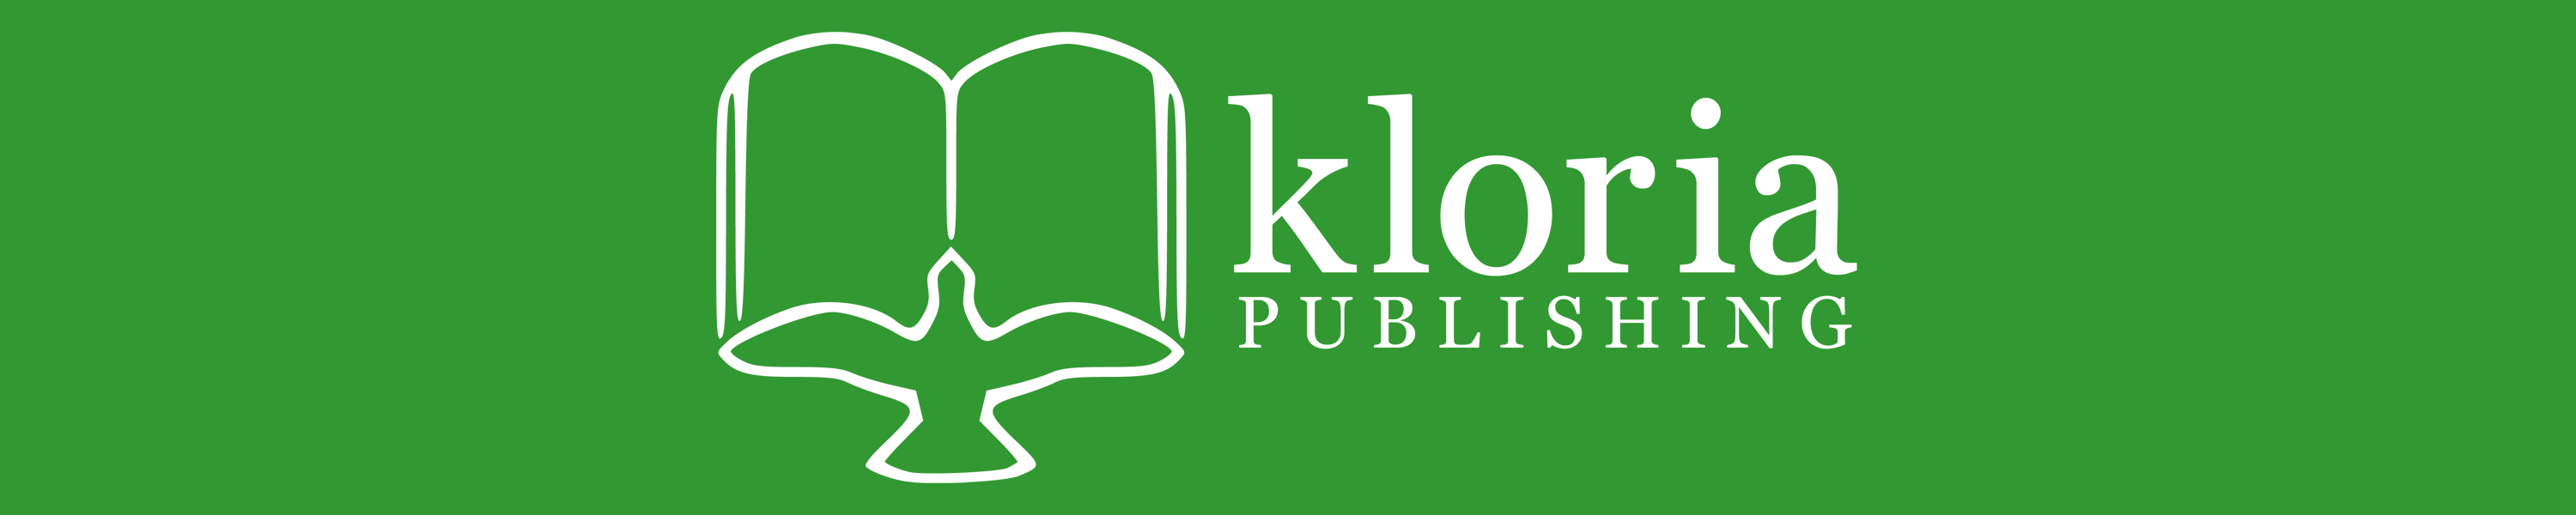 Kloria Publishing logo